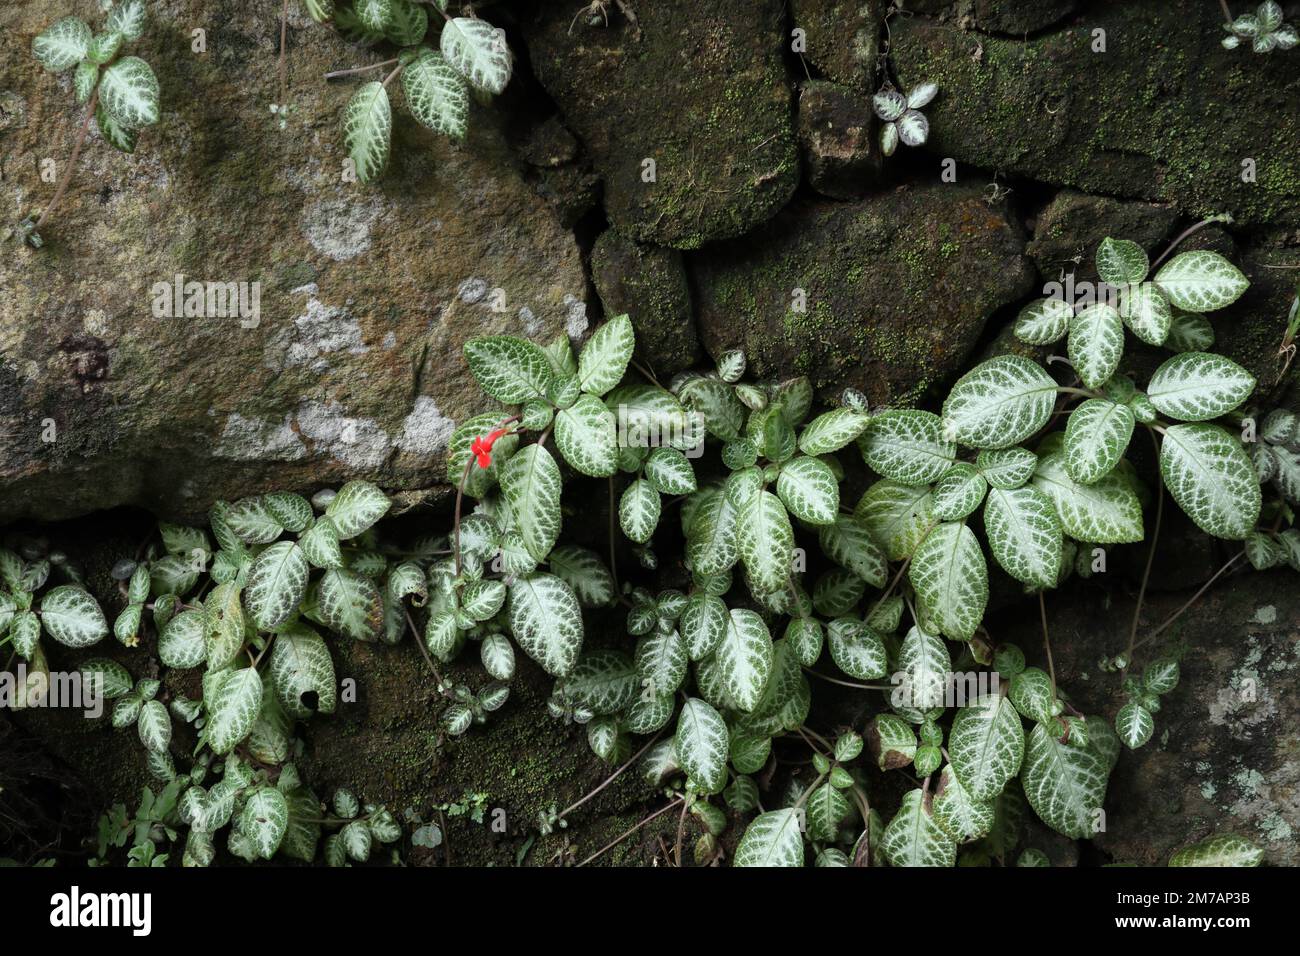 Une plante blanche à feuilles variées Episcia Cupreata avec une petite fleur rouge est naturellement cultivée à la surface d'un mur de roche Banque D'Images